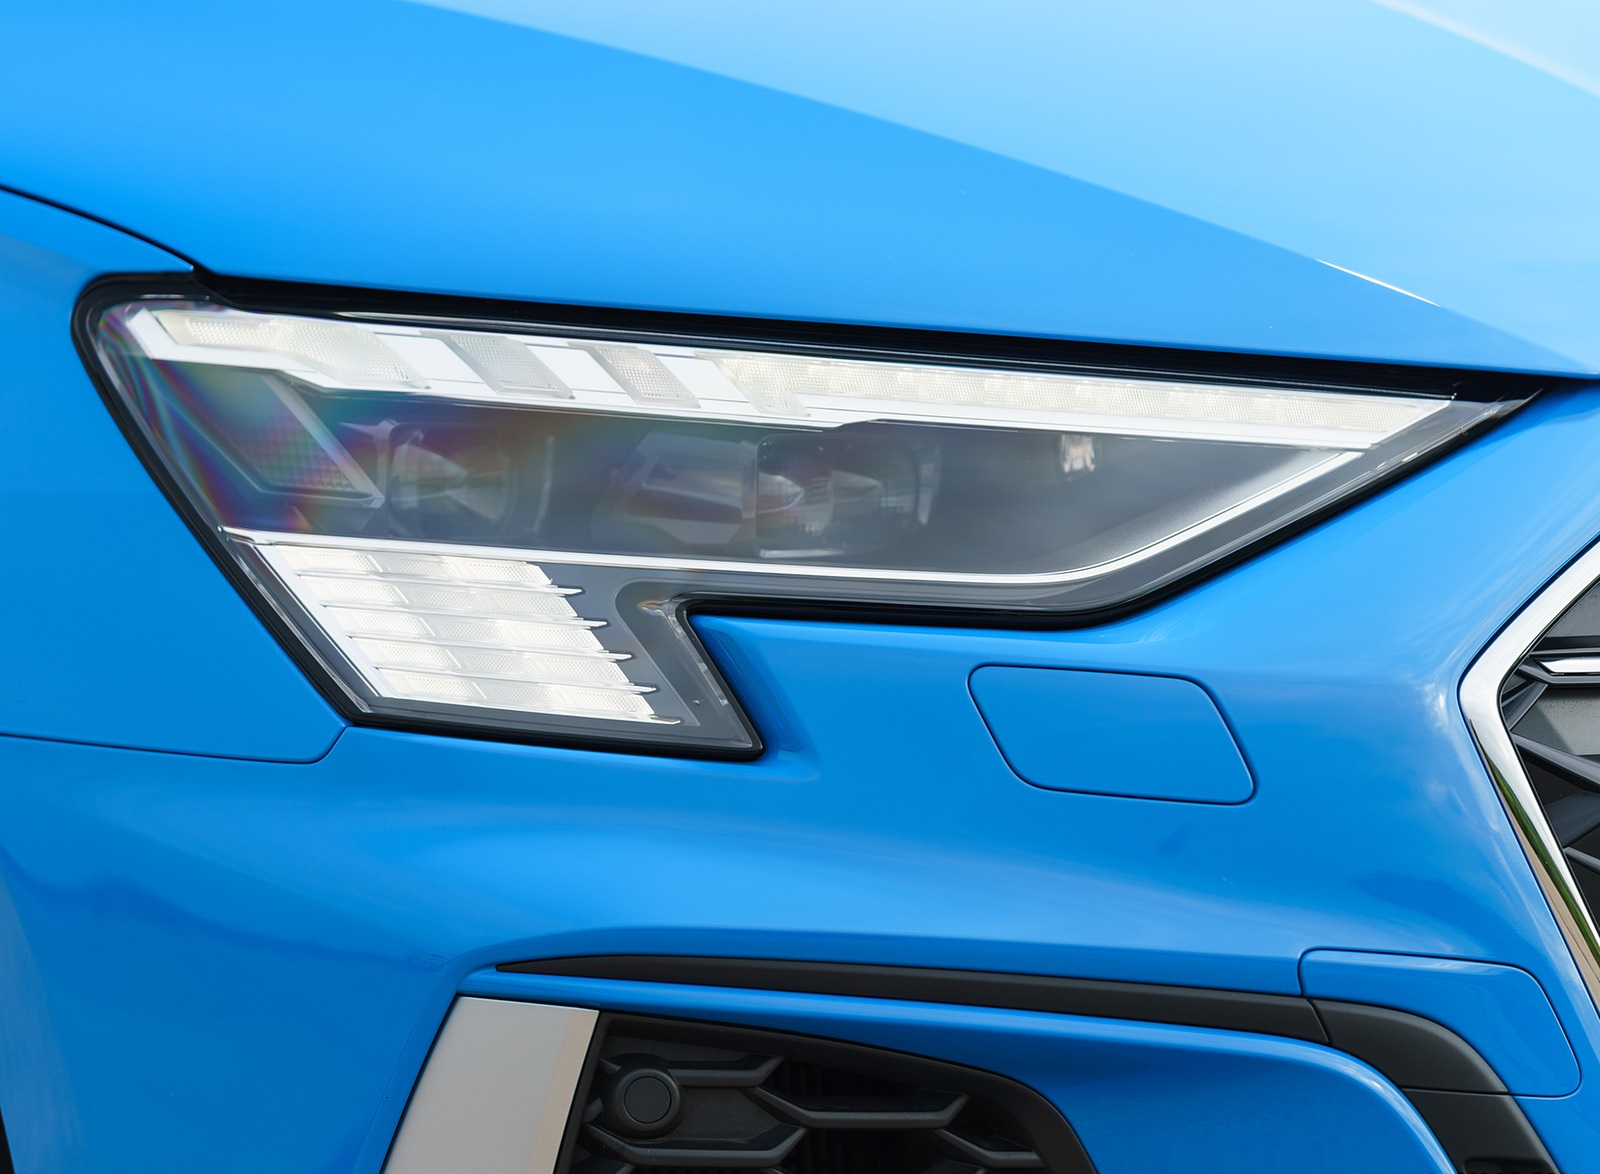 2021 Audi S3 (UK-Spec) Headlight Wallpapers #56 of 110